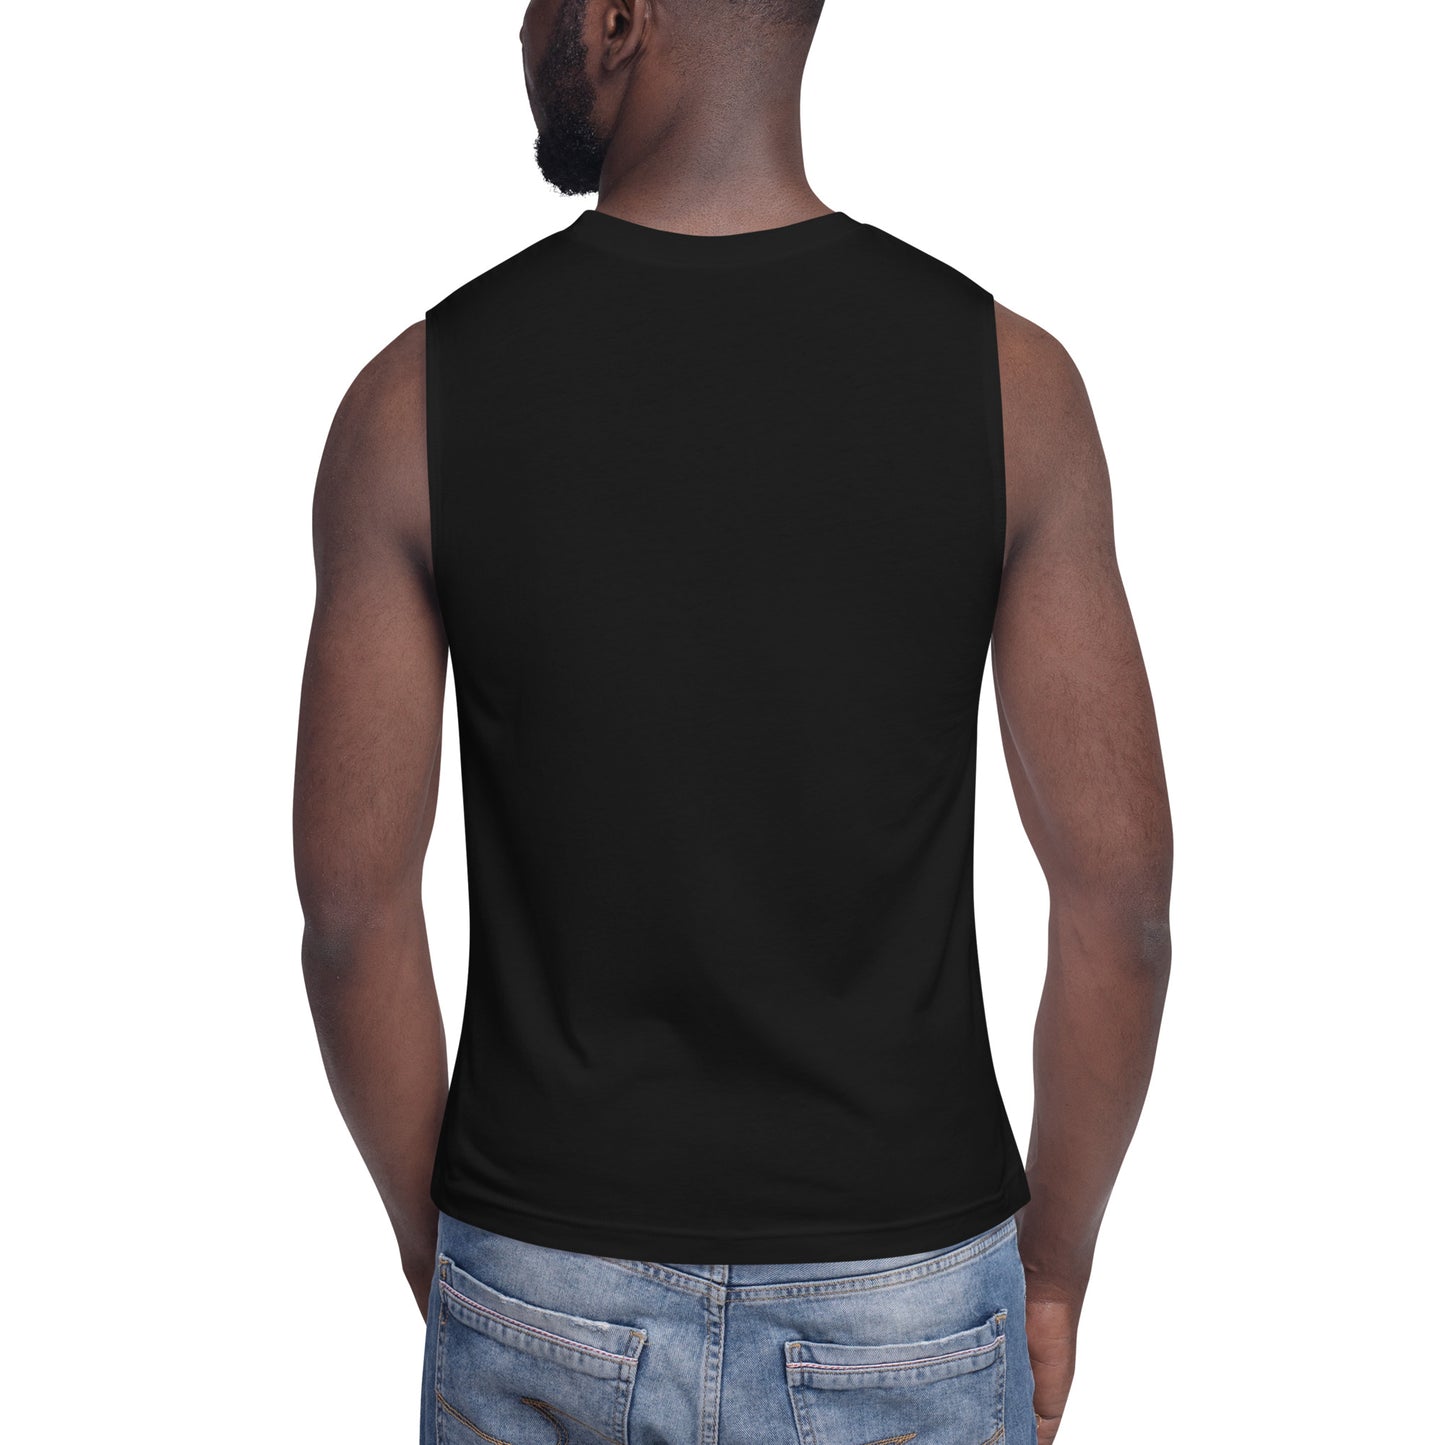 AFRICA WARHOL (Vertical) Muscle Shirt